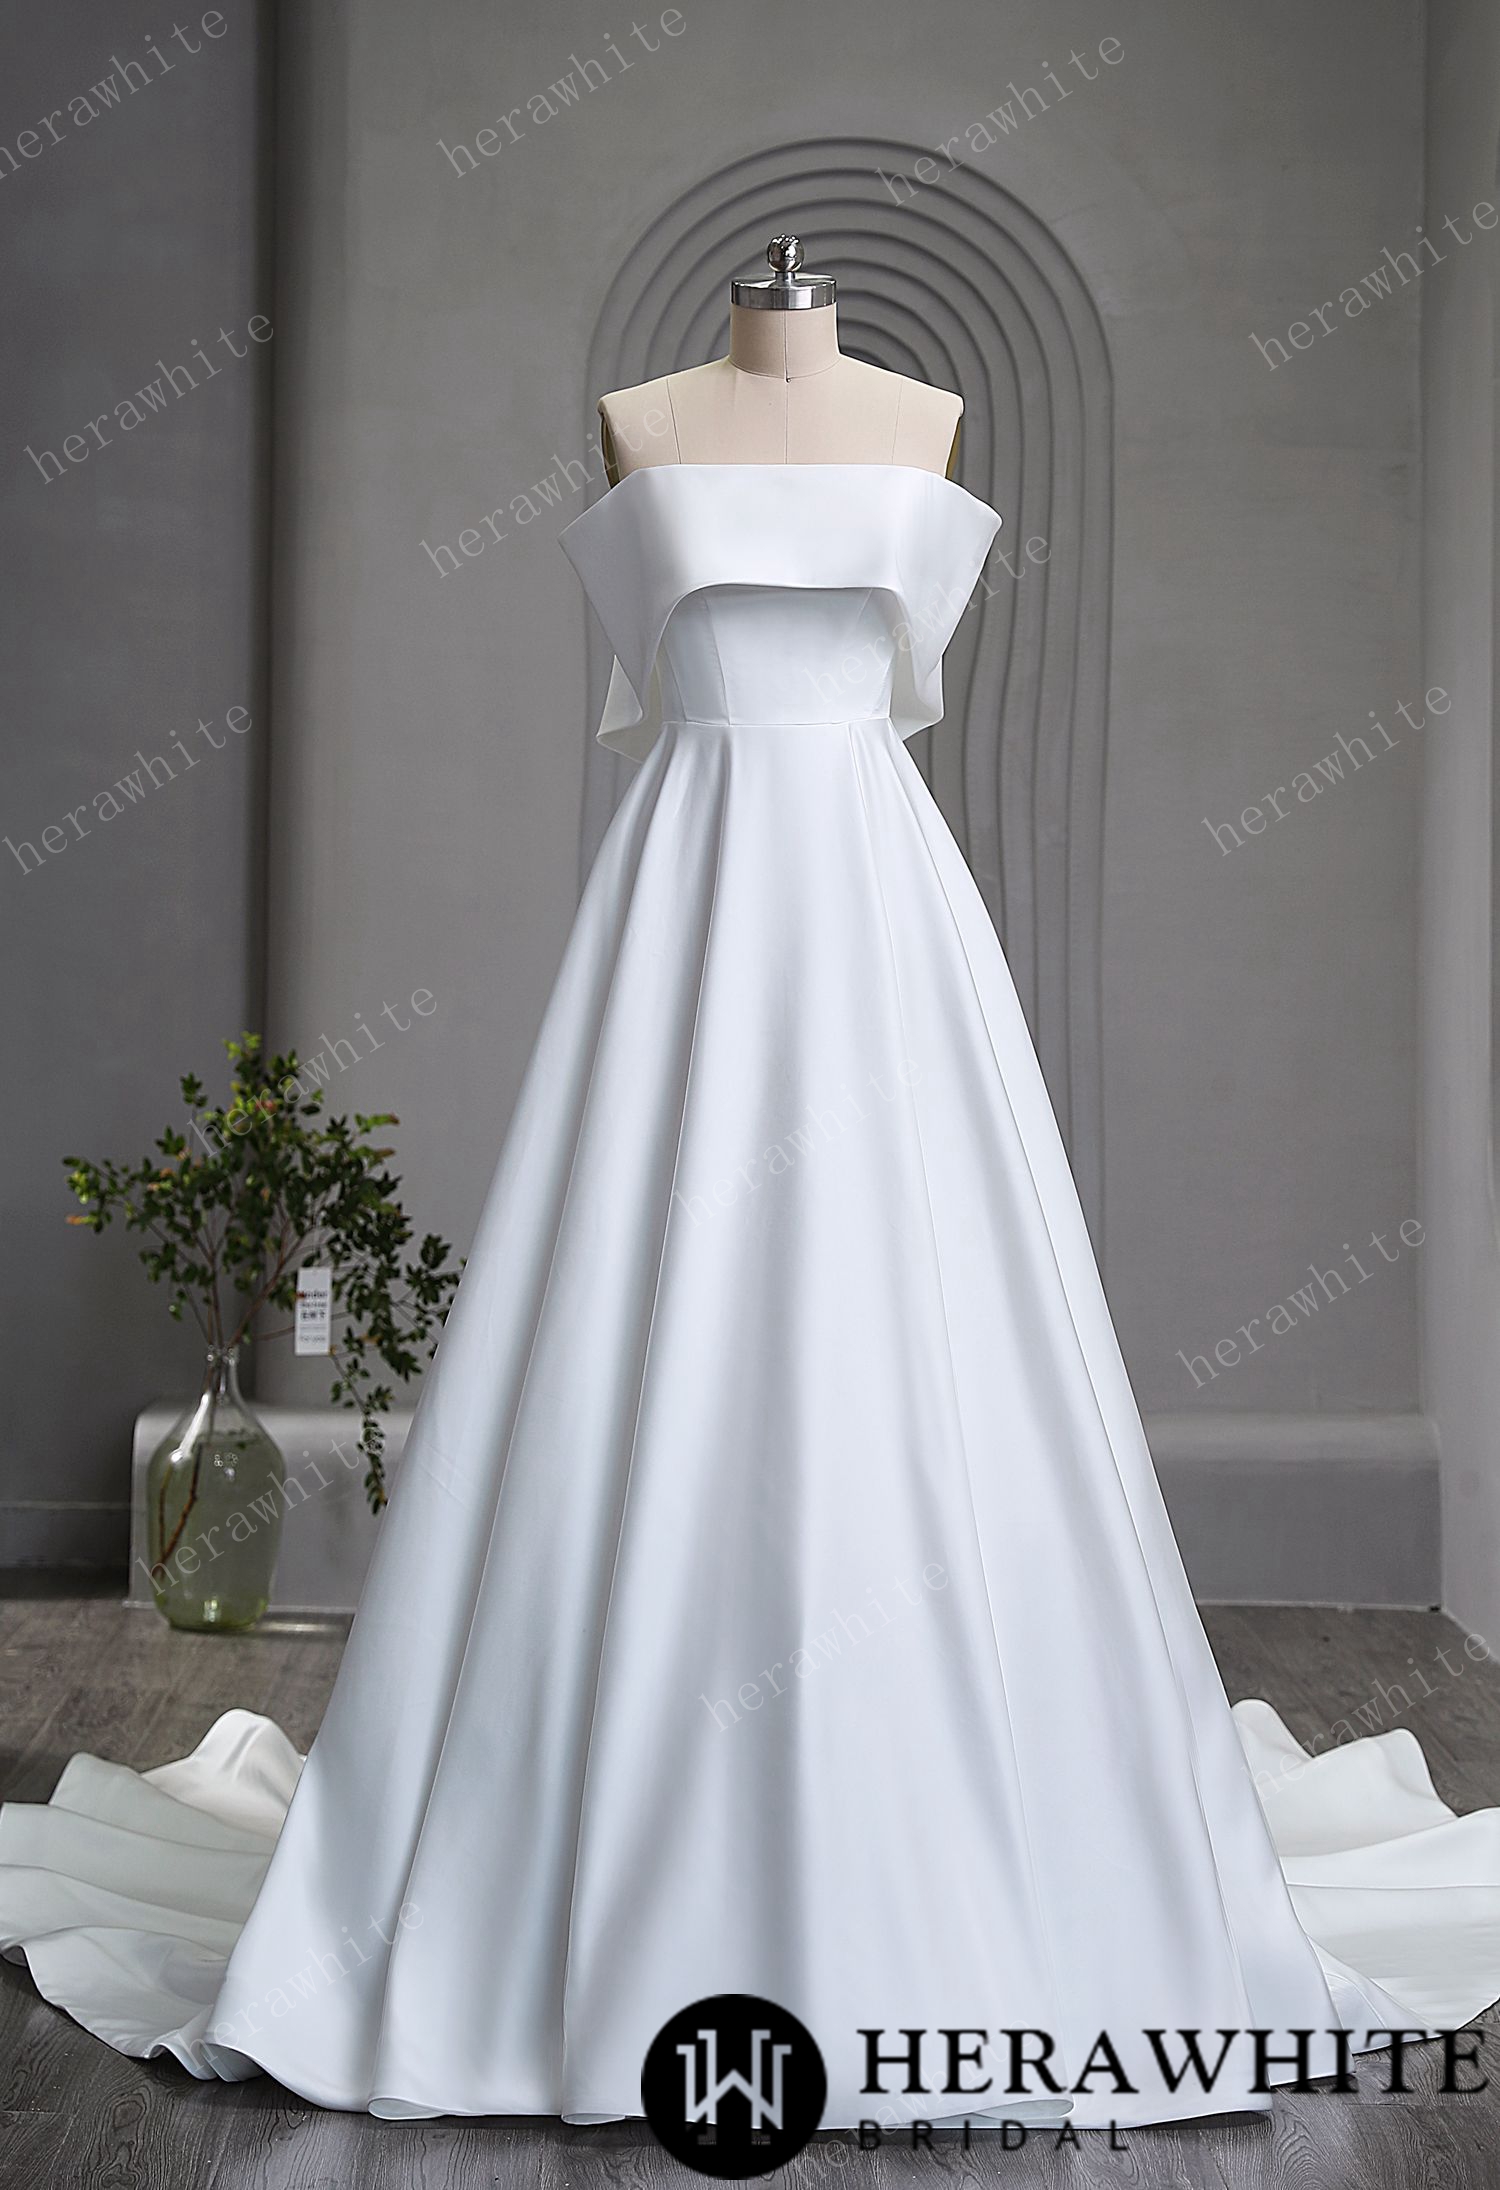 Modern Satin Wedding Dress with Off-the-shoulder Design